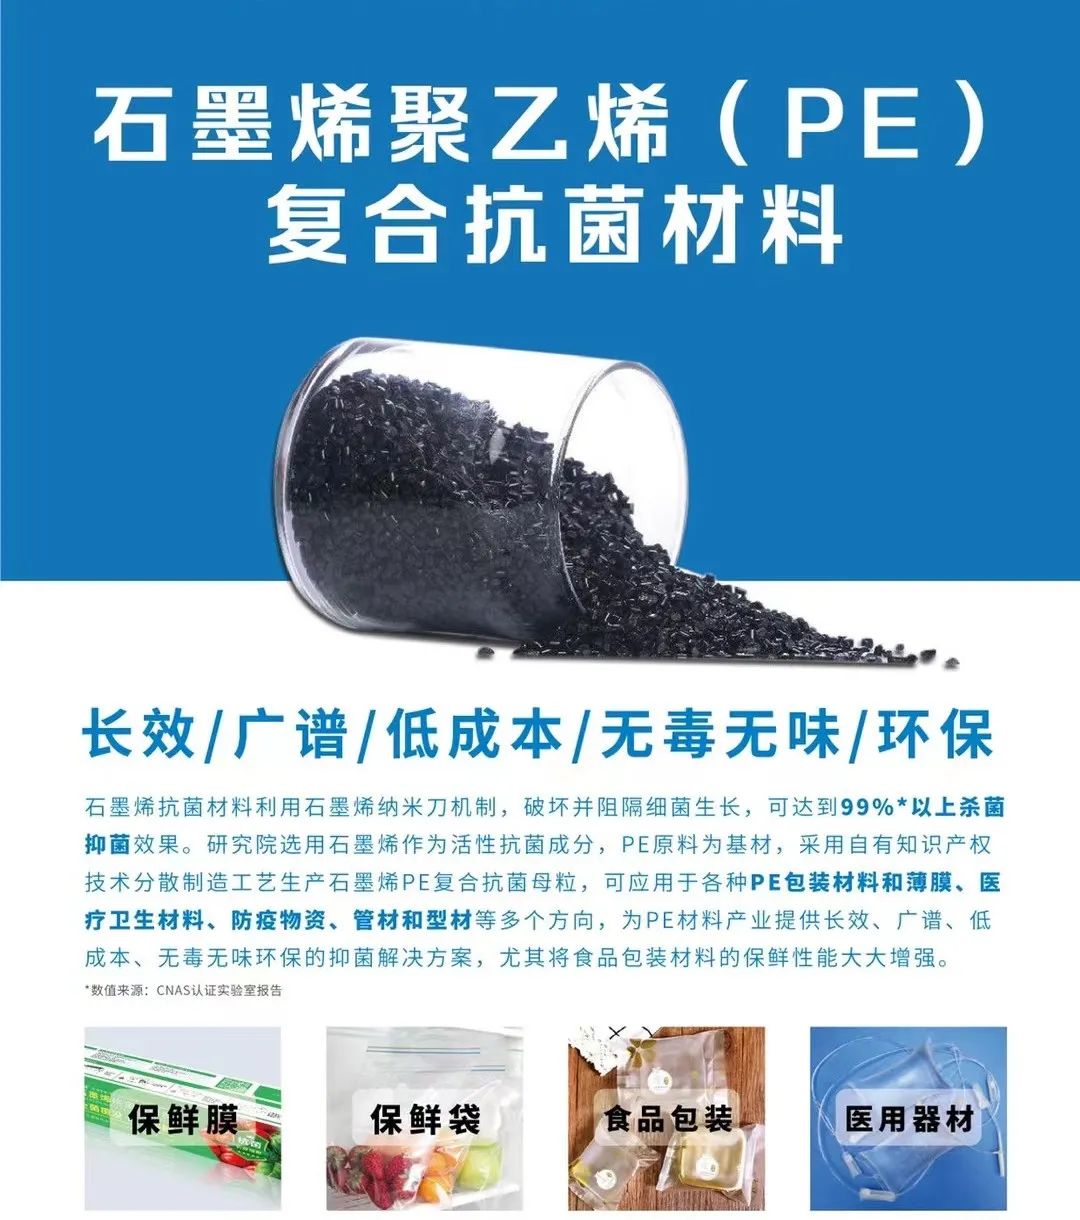 新型石墨烯树脂材料首次亮相<深圳国际塑料橡胶工业展>